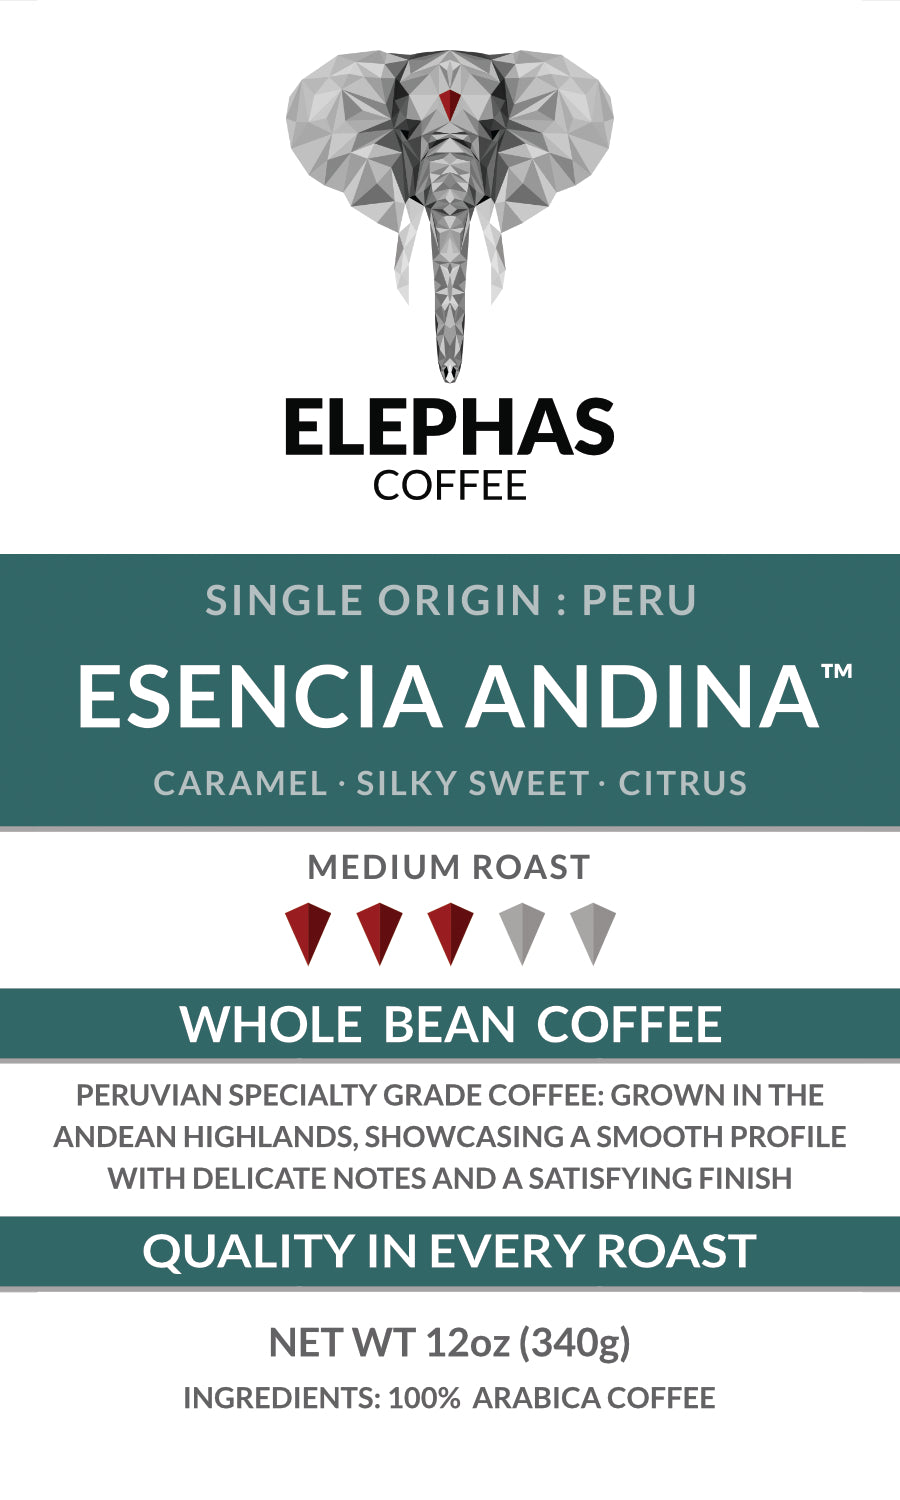 ESENCIA ANDINA Peru Single Origin Coffee - Subscriber Exclusive